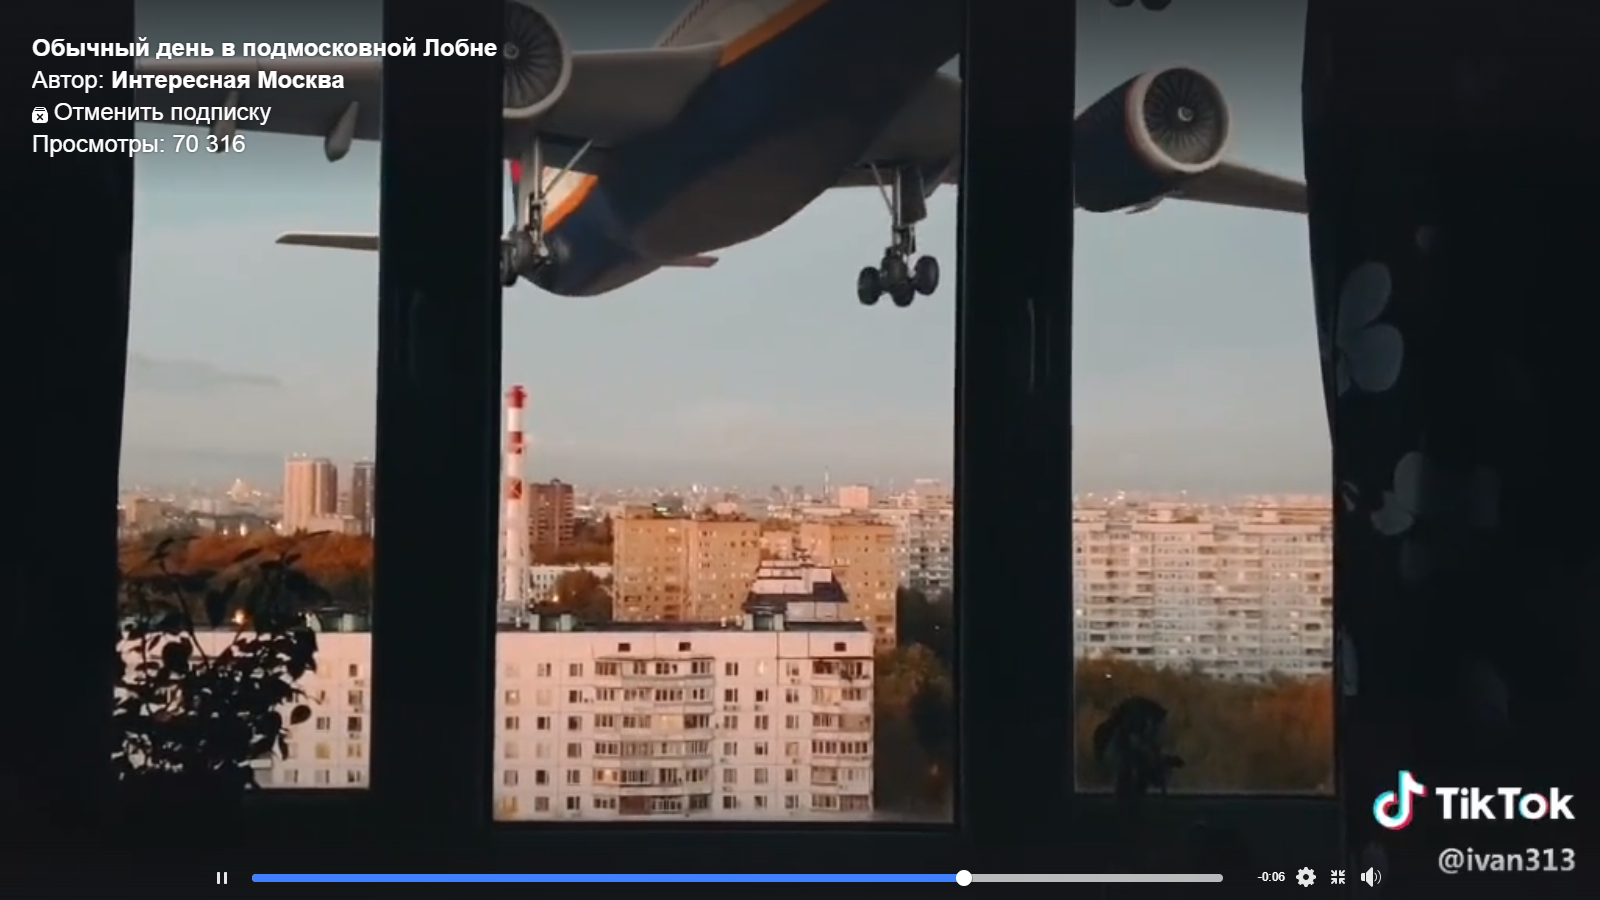 Монтаж дня: самолеты залетают в окна жилых домов в подмосковной Лобне